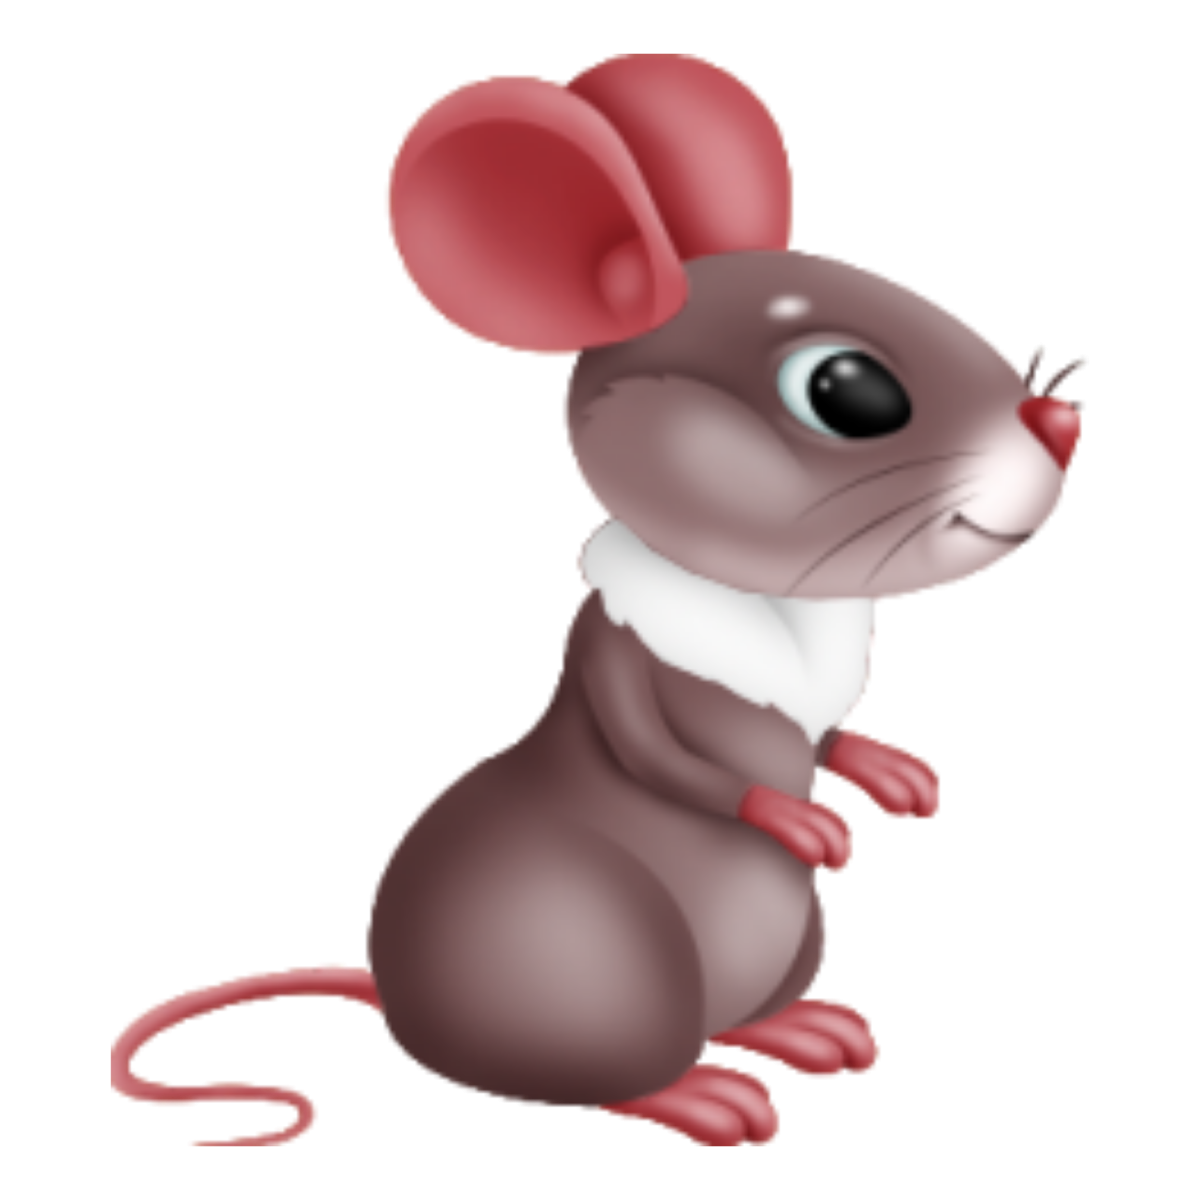 Картинки мышь для детей на прозрачном фоне. Мышка Сказочная. Мультяшная мышь. Мышка для детей. Мышь картинка.